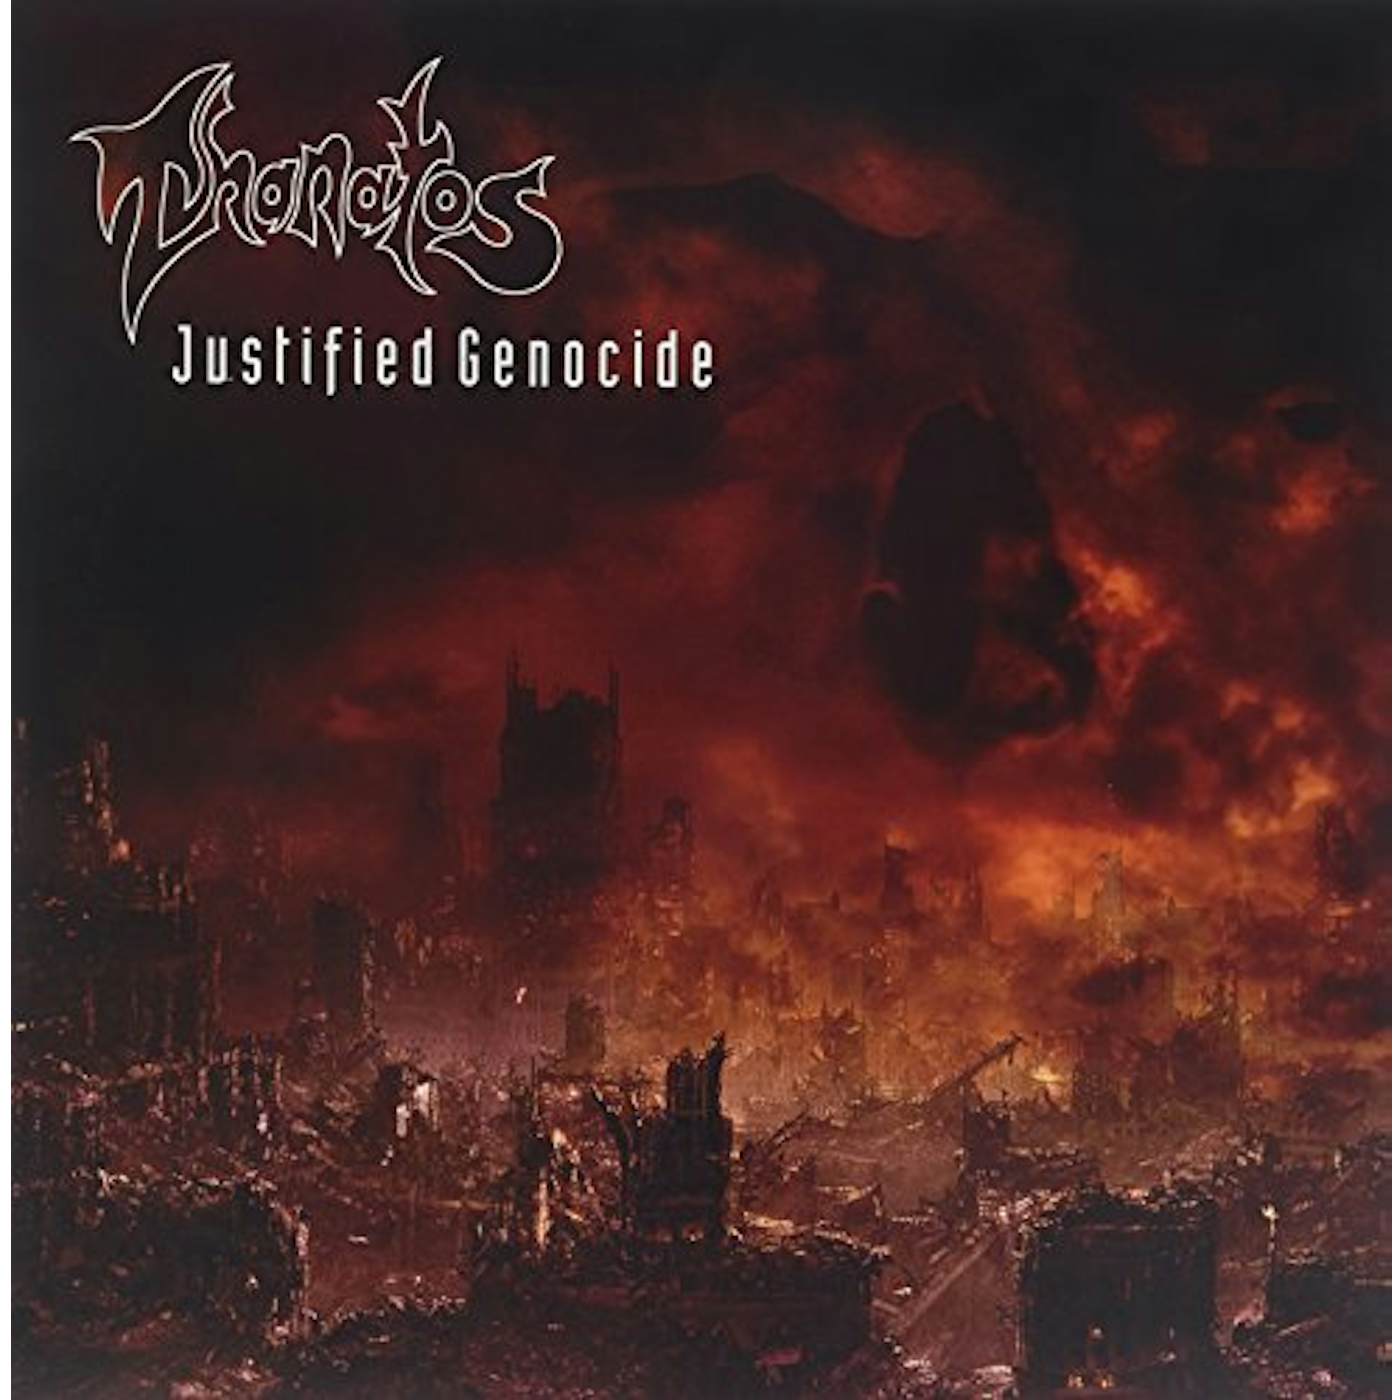 Thanatos Justified Genocide Vinyl Record